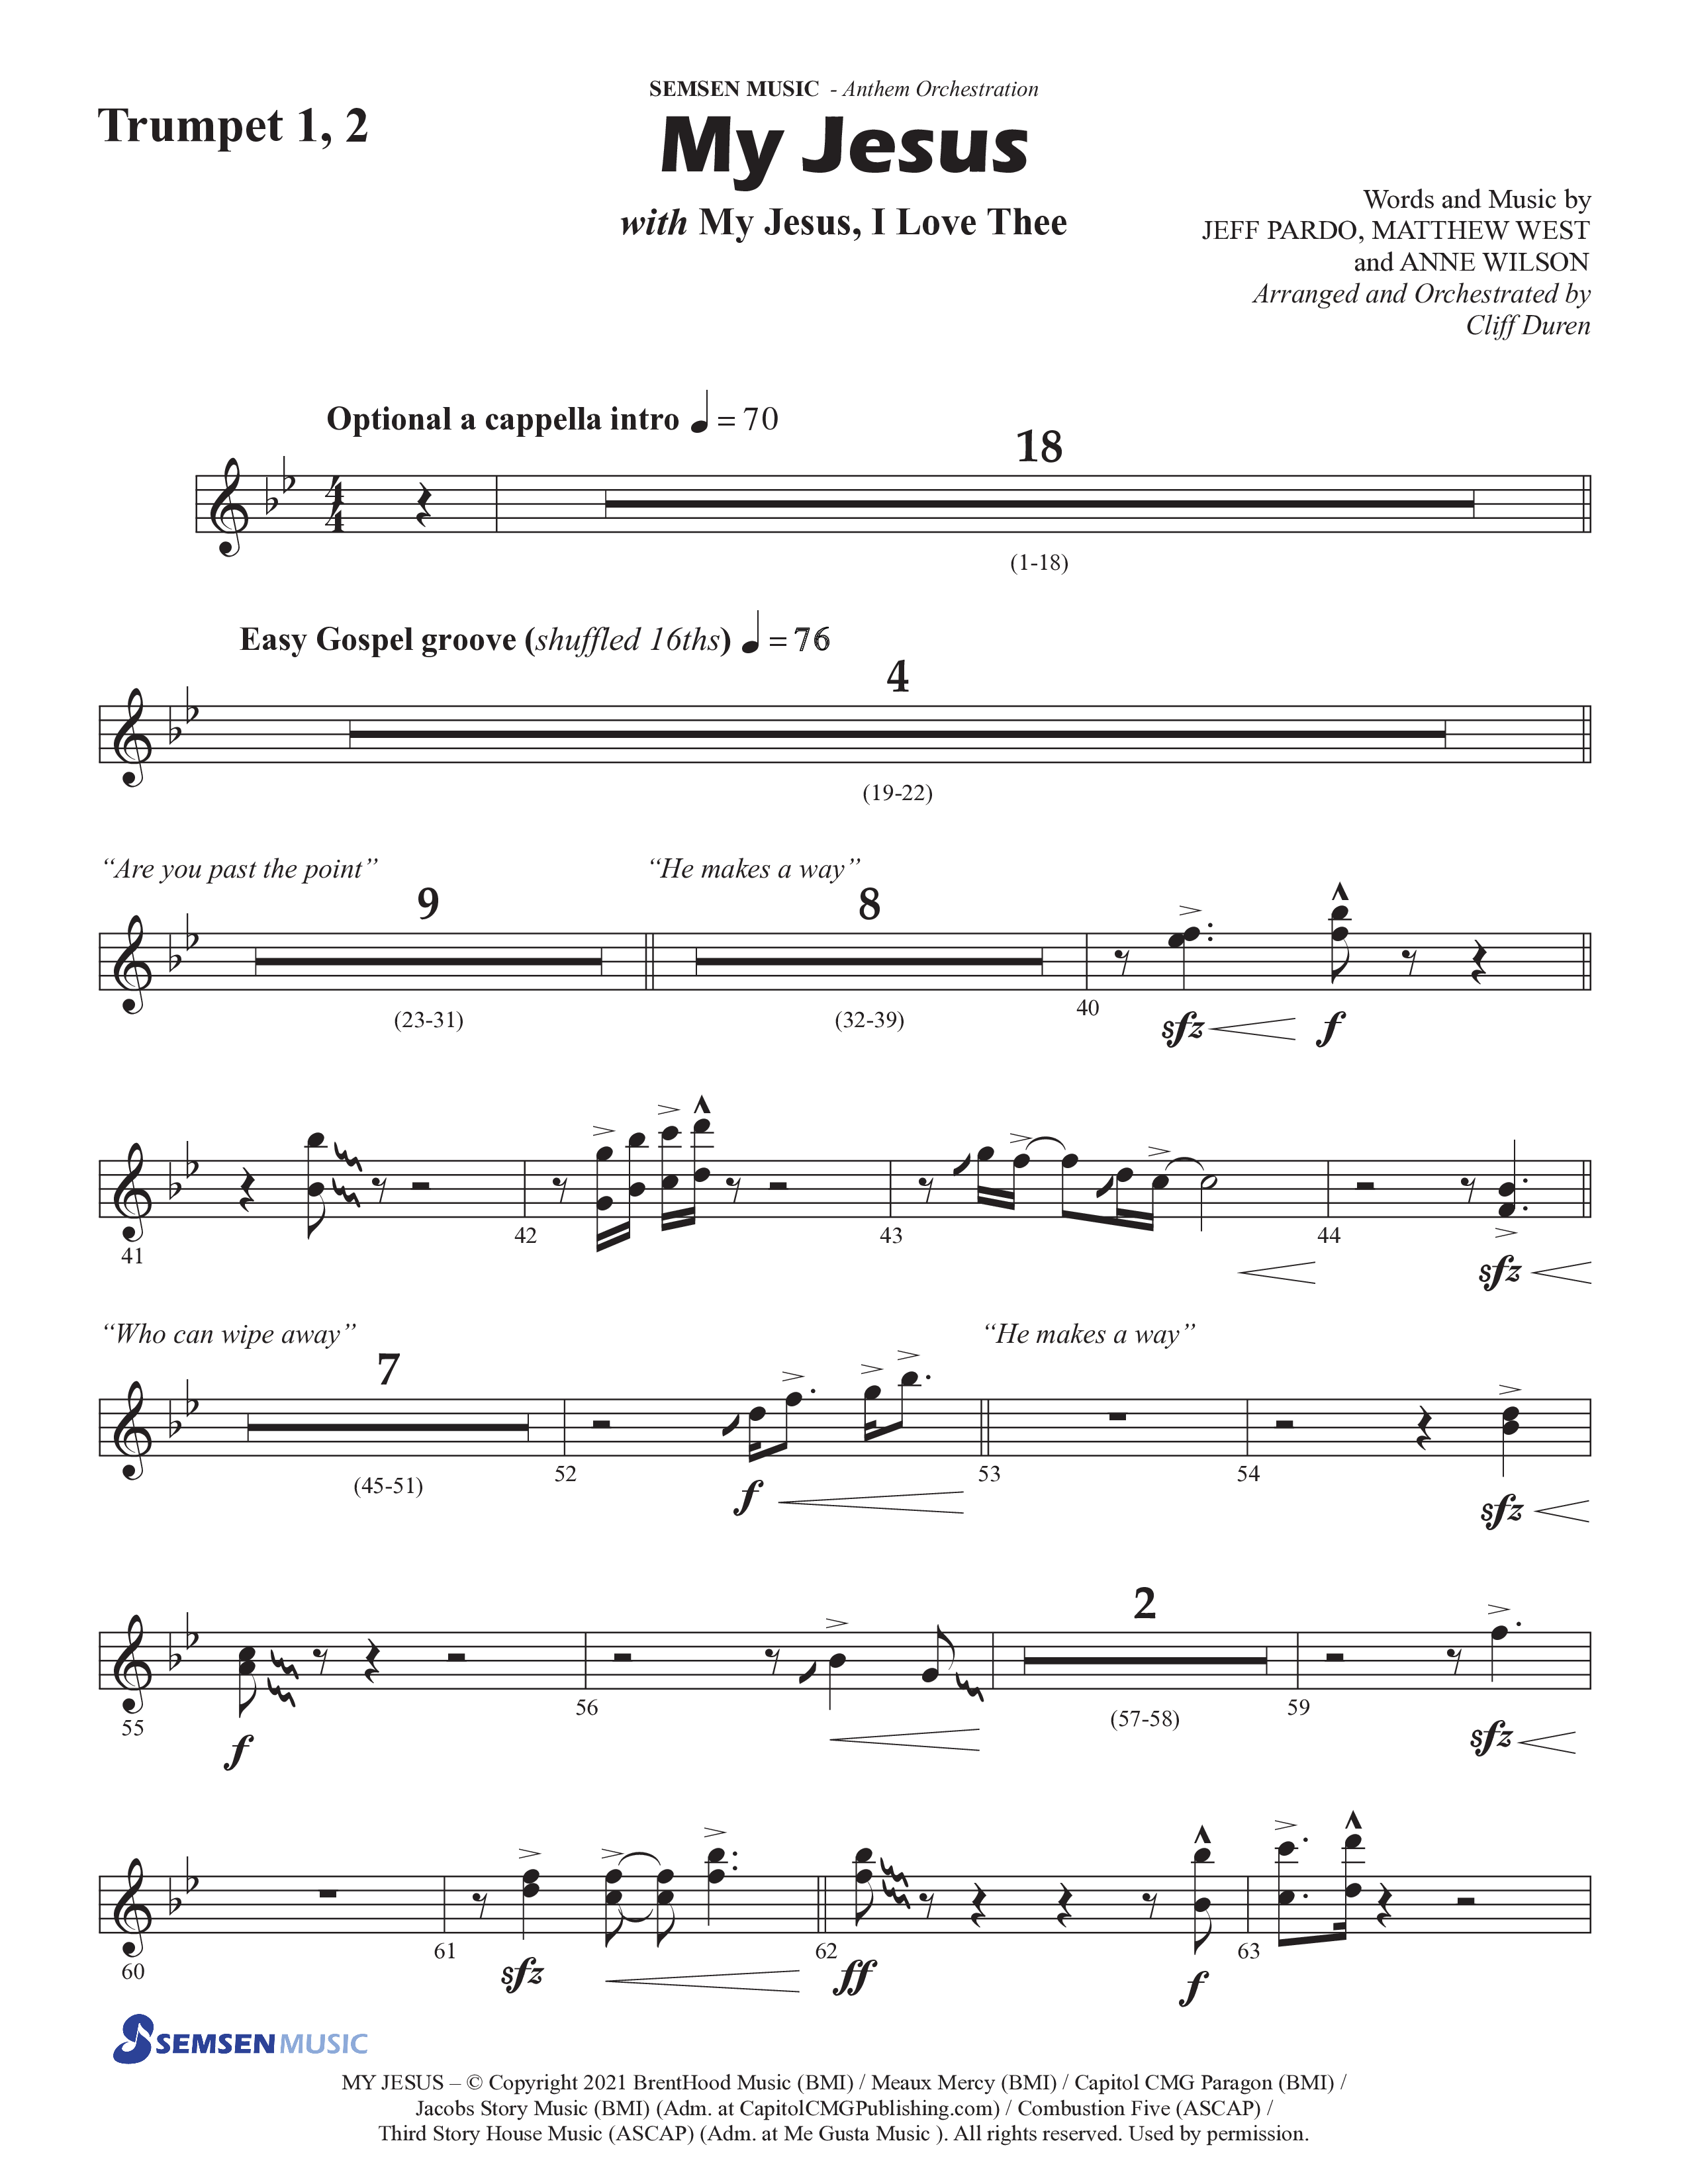 My Jesus (with My Jesus I Love Thee) (Choral Anthem SATB) Trumpet 1,2 (Semsen Music / Arr. Cliff Duren)